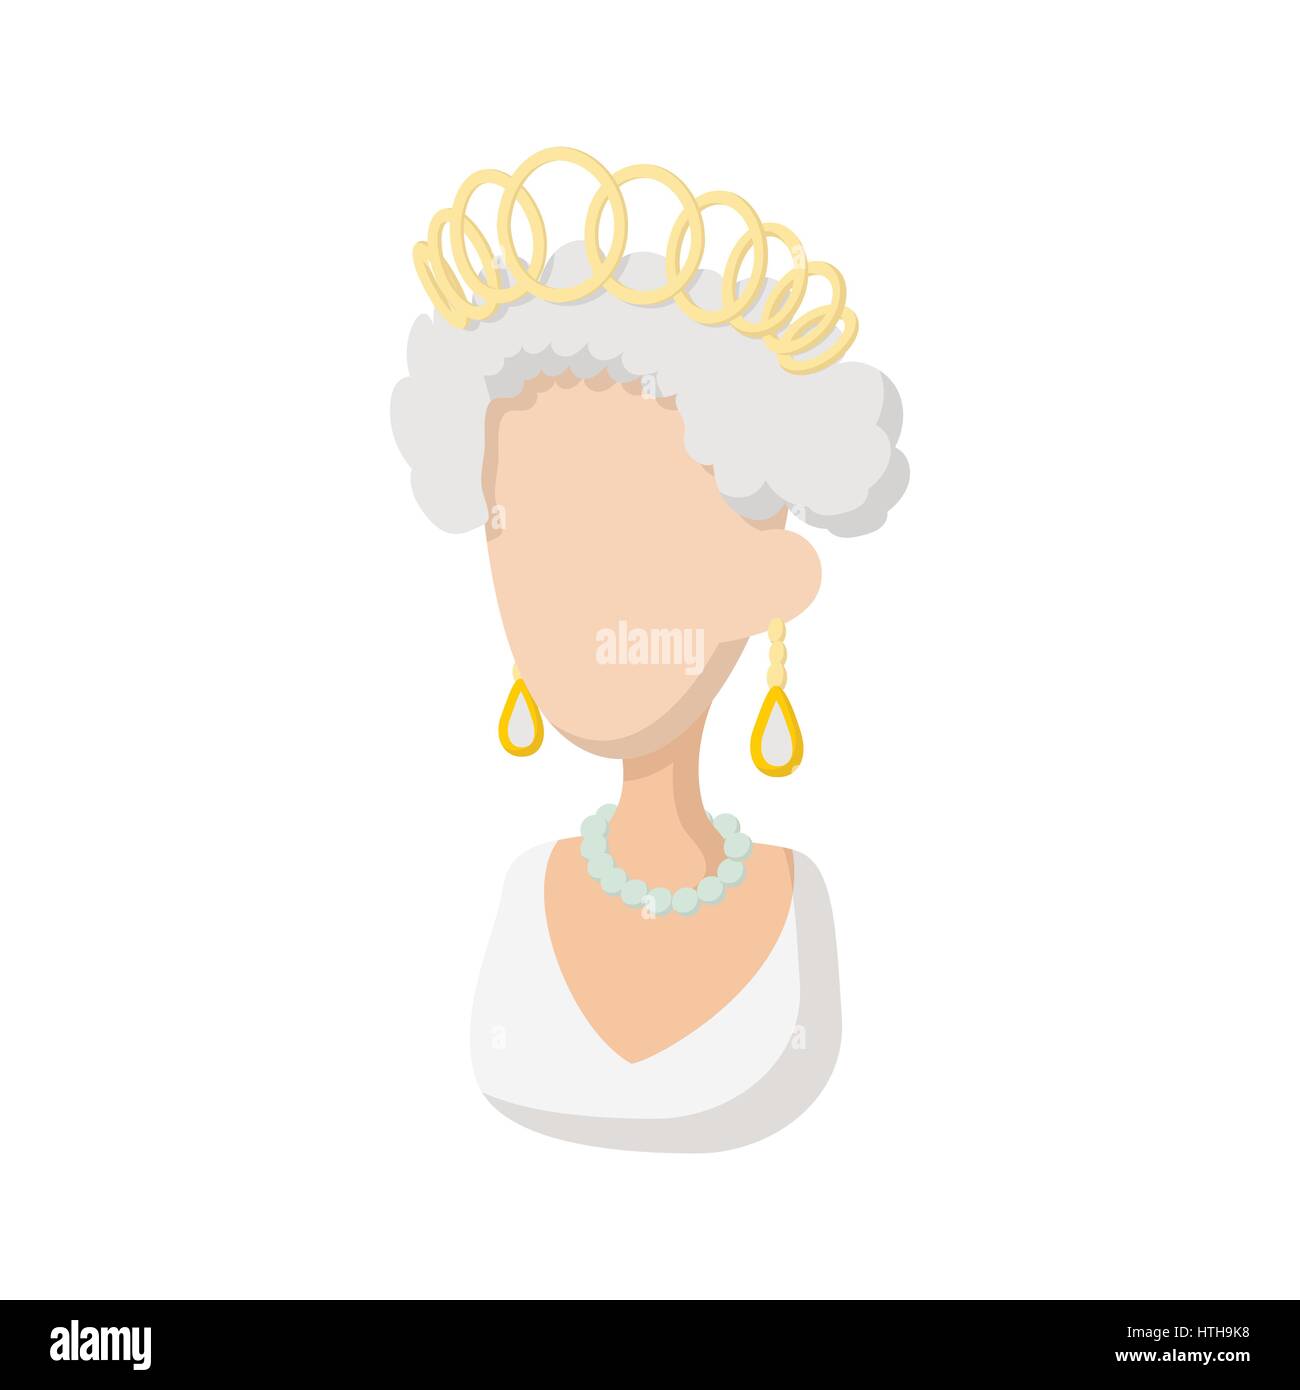 Queen icon, cartoon style Stock Vector